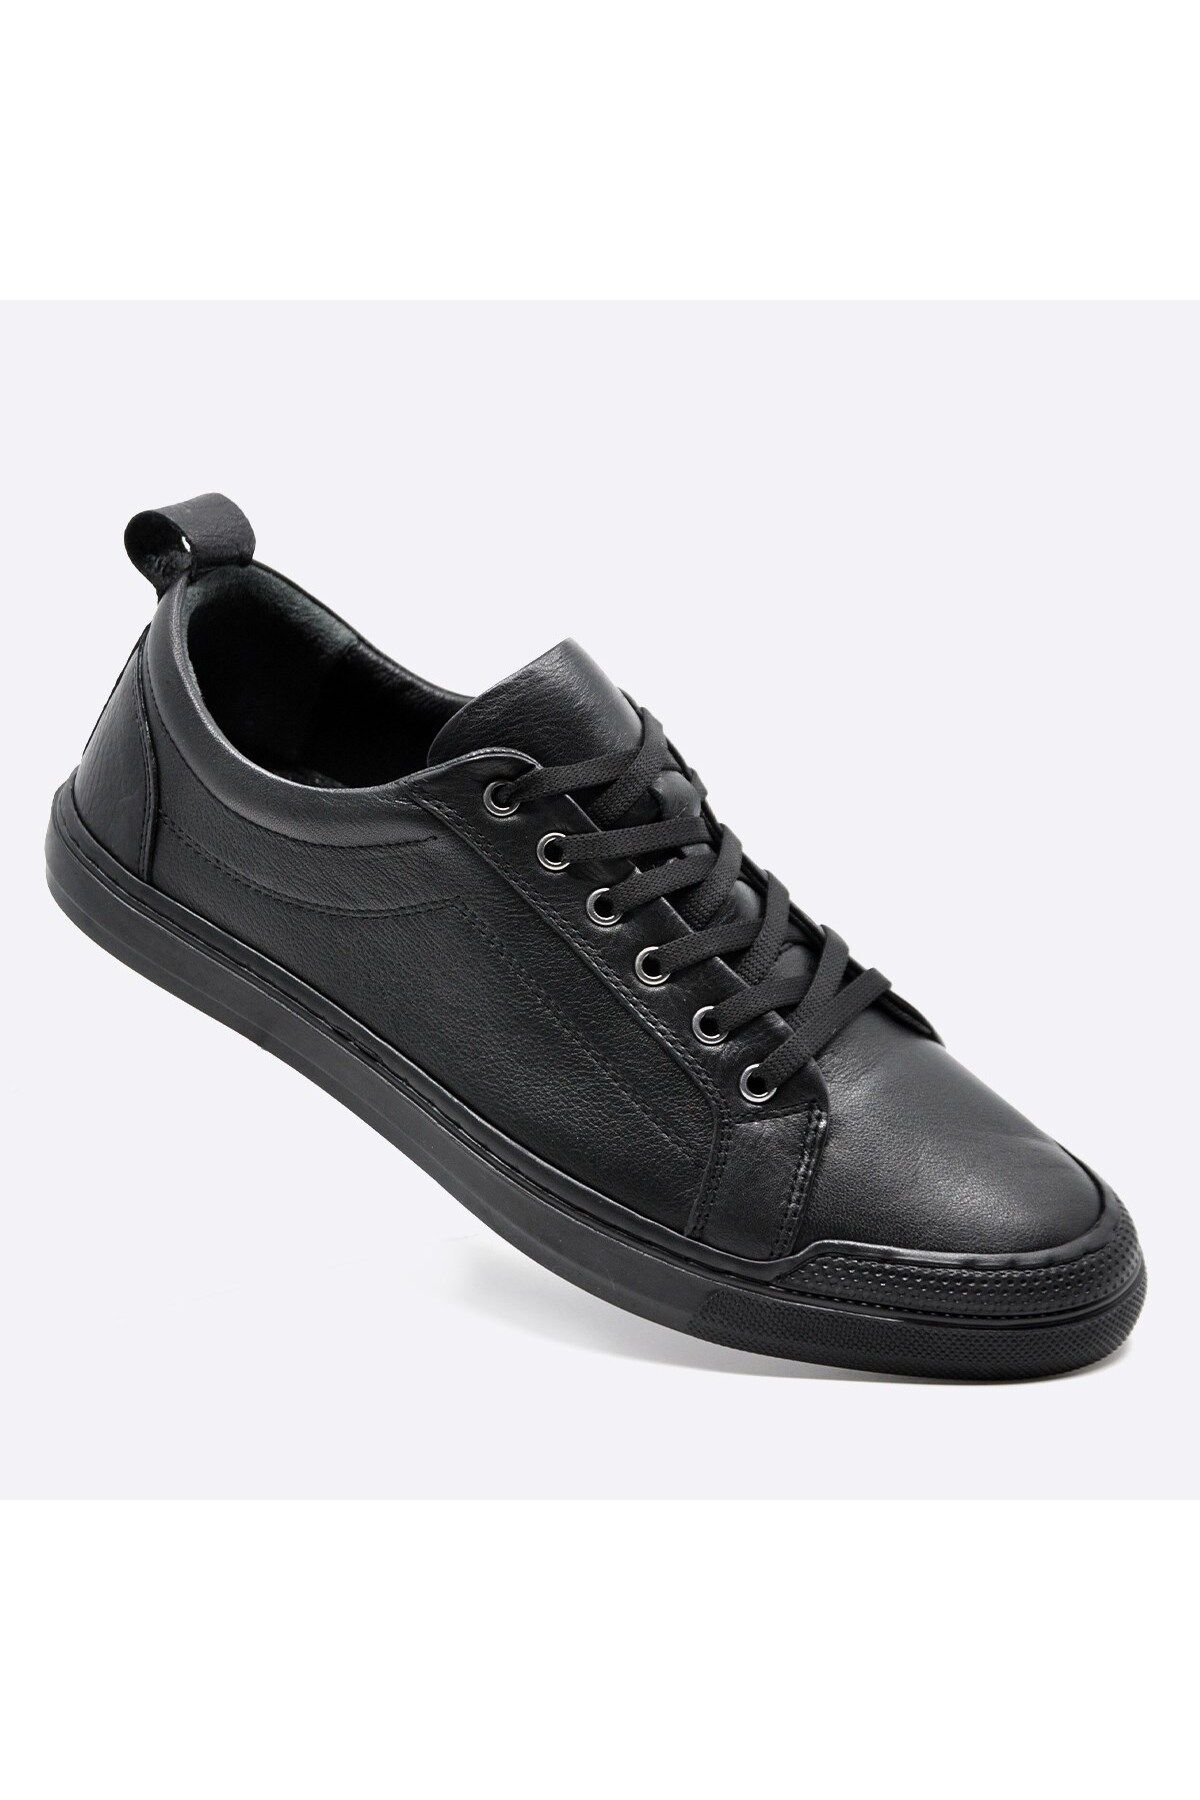 Fosco Hakiki Deri Sneaker Erkek Ayakkabı Siyah 9822 100